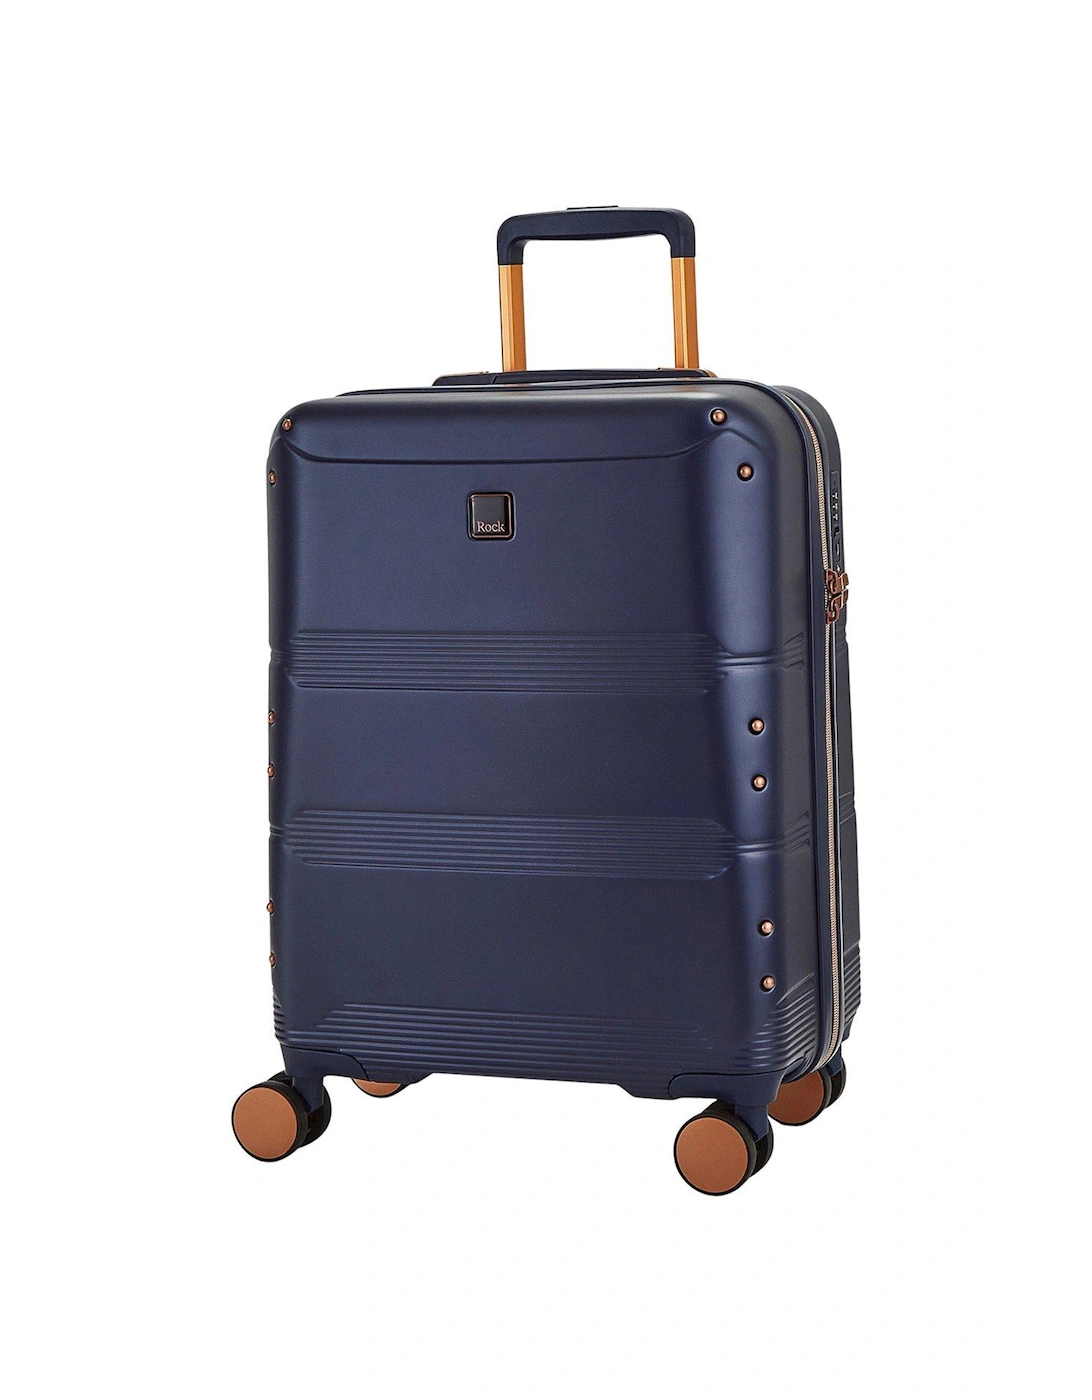 Mayfair 8 Wheel Hardshell Cabin Suitcase - Navy, 2 of 1